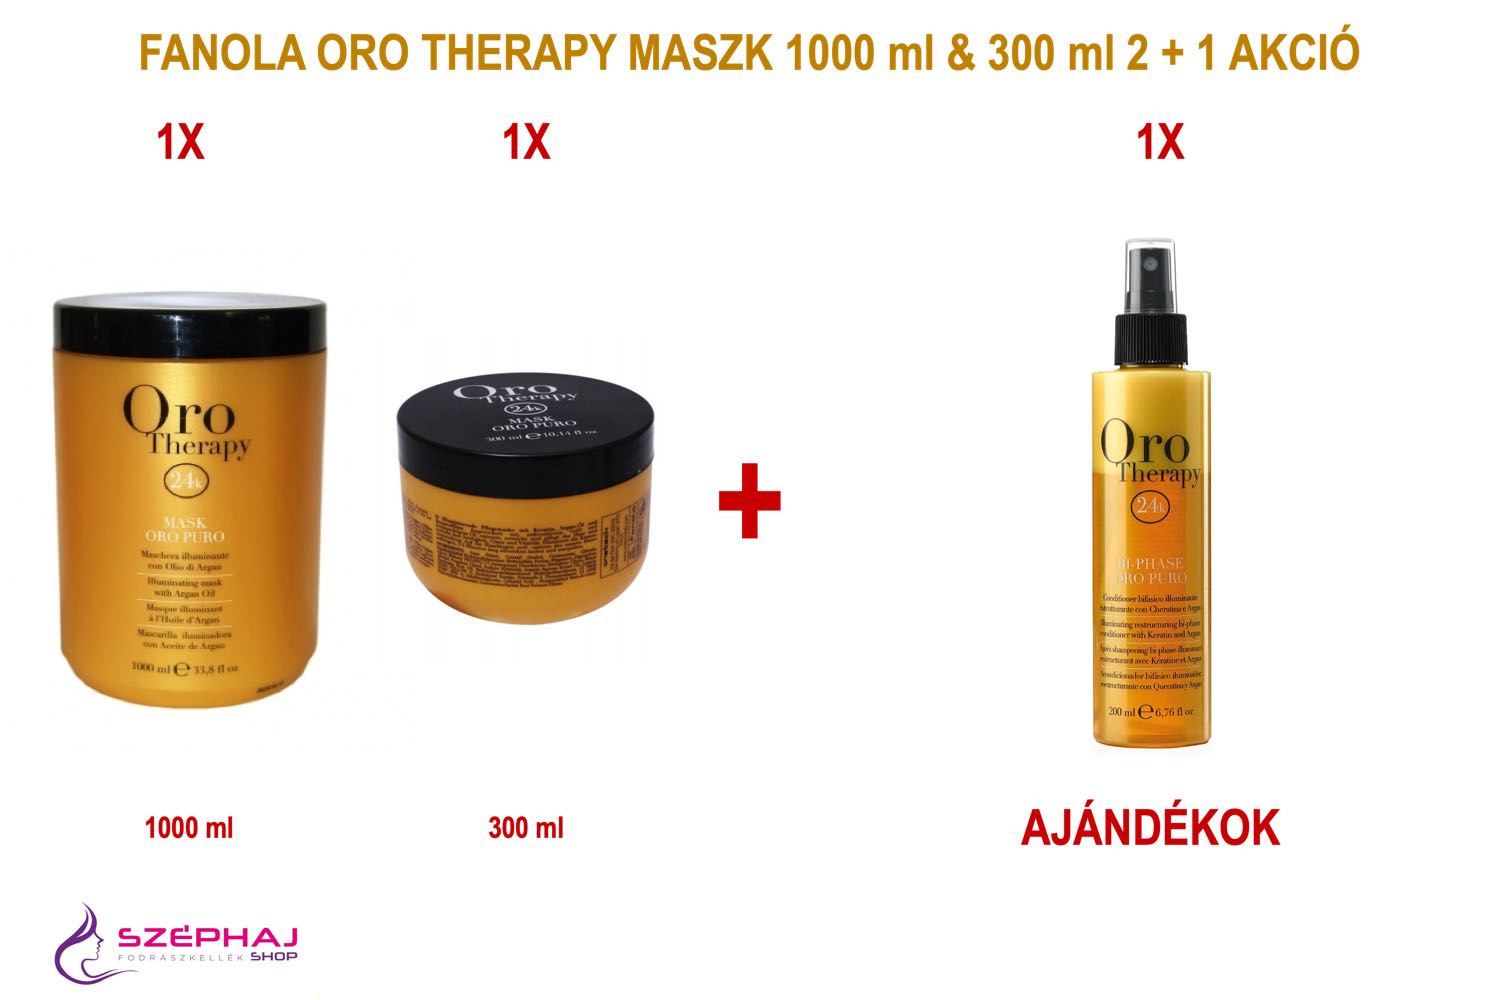 FANOLA ORO Therapy  Mask 1000 ml & 300 ml 2+1 AKCIÓ